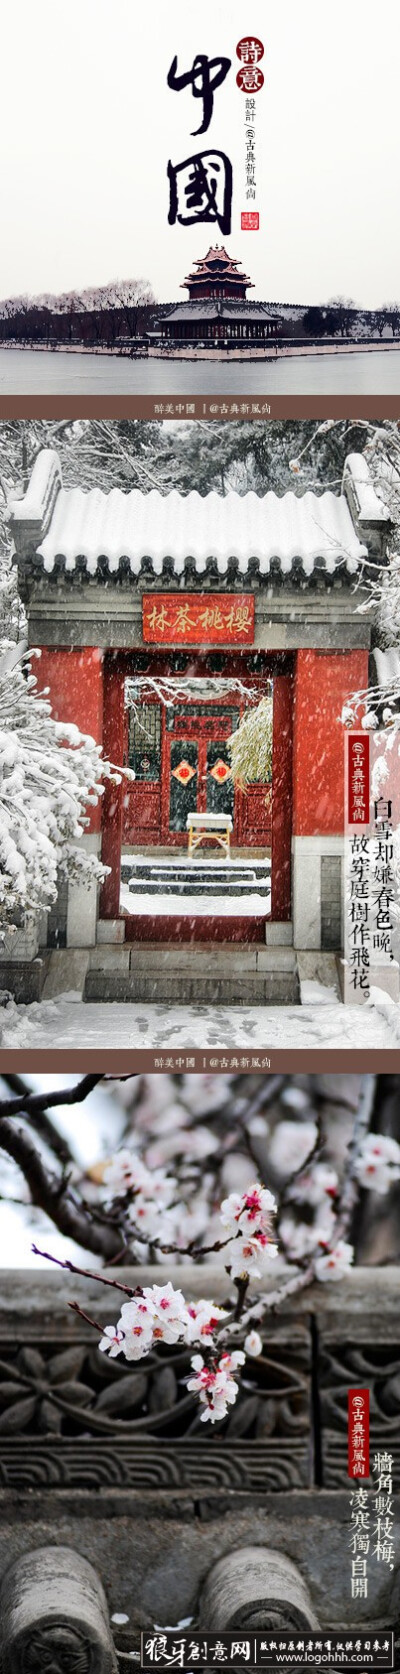 四合院中国古建筑文化海报设计案例 傲骨的梅花元素中国文化海报